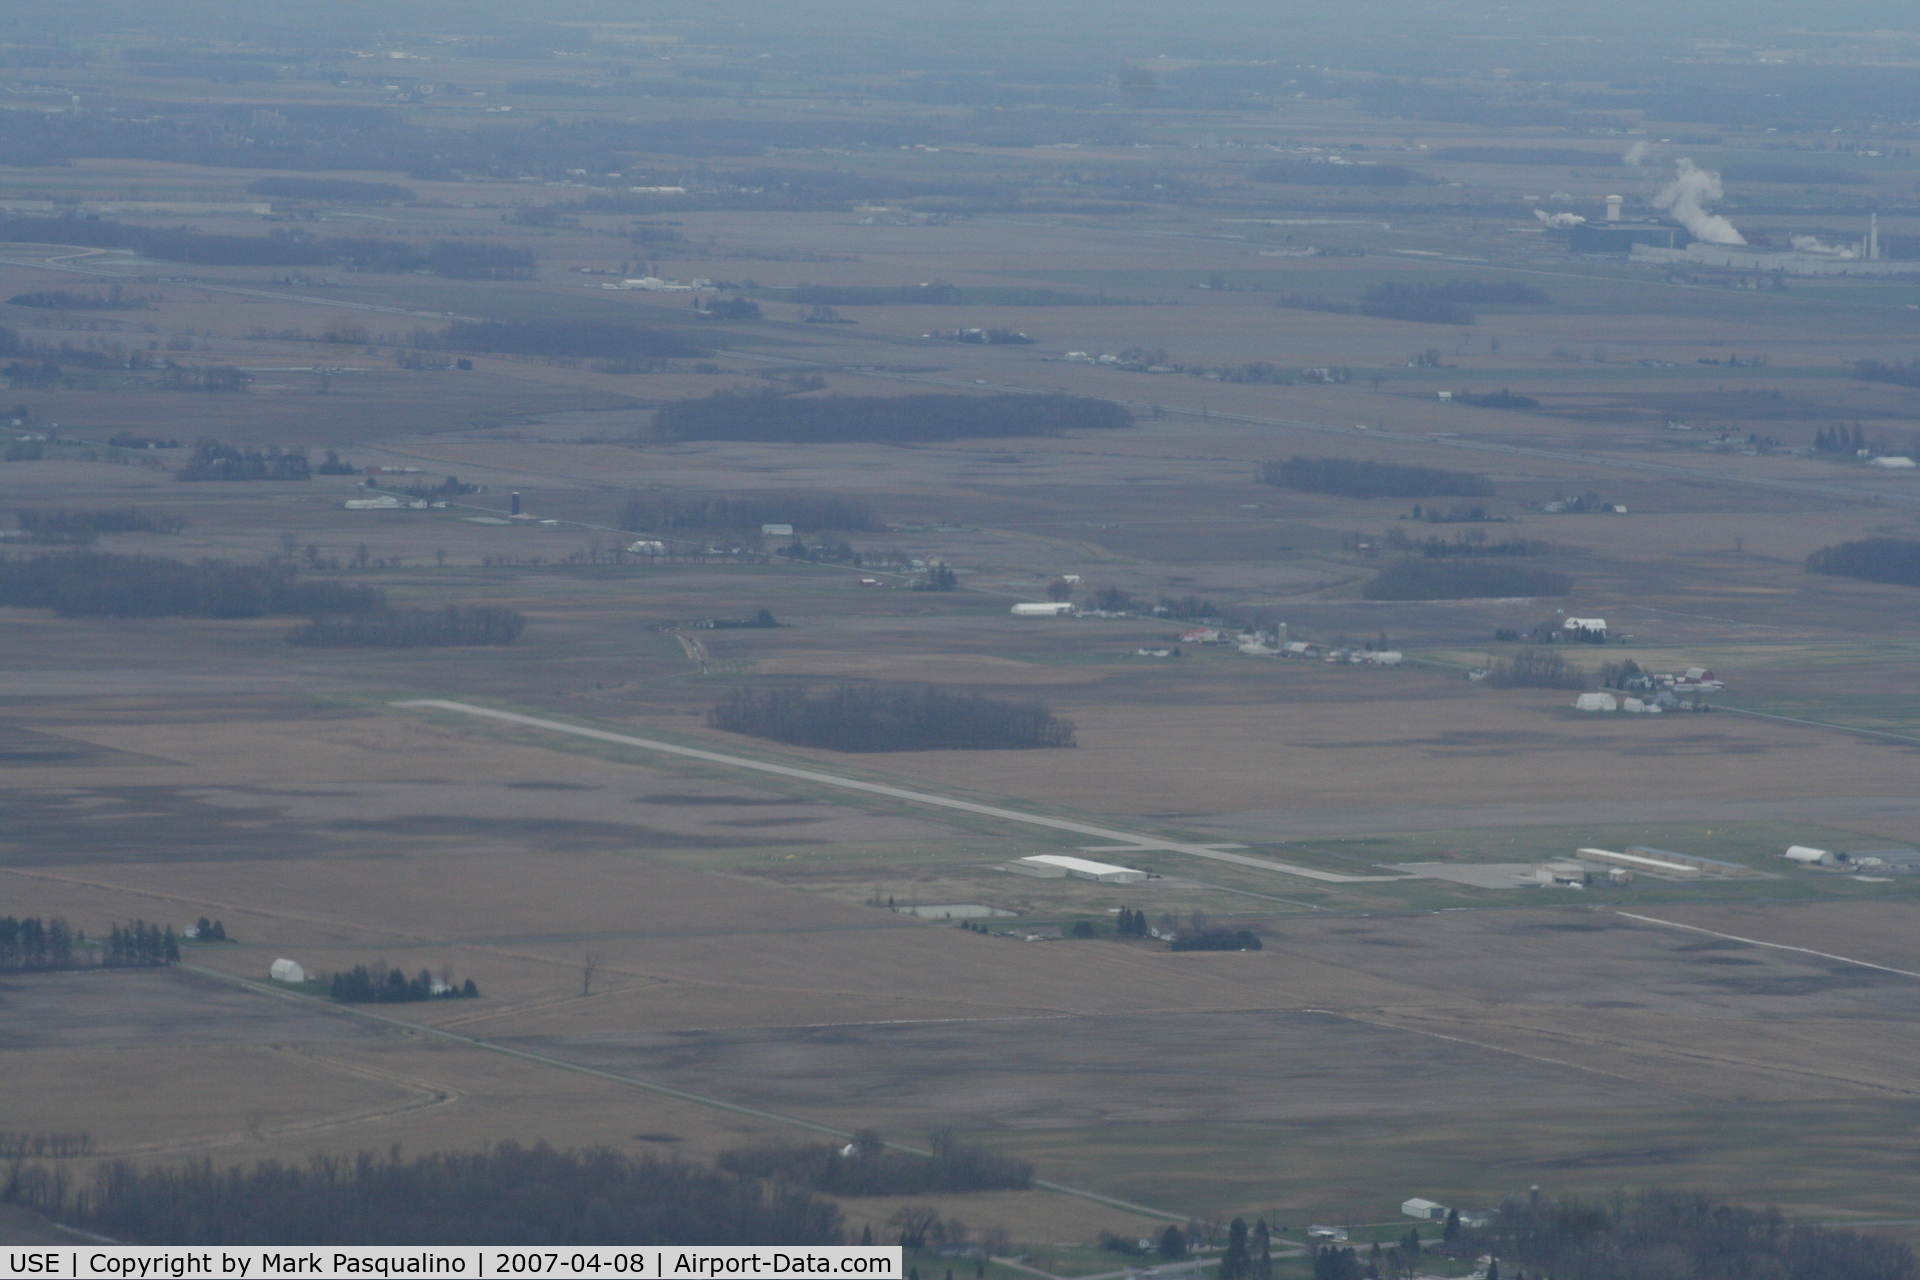 Fulton County Airport (USE) - Fulton County Airport